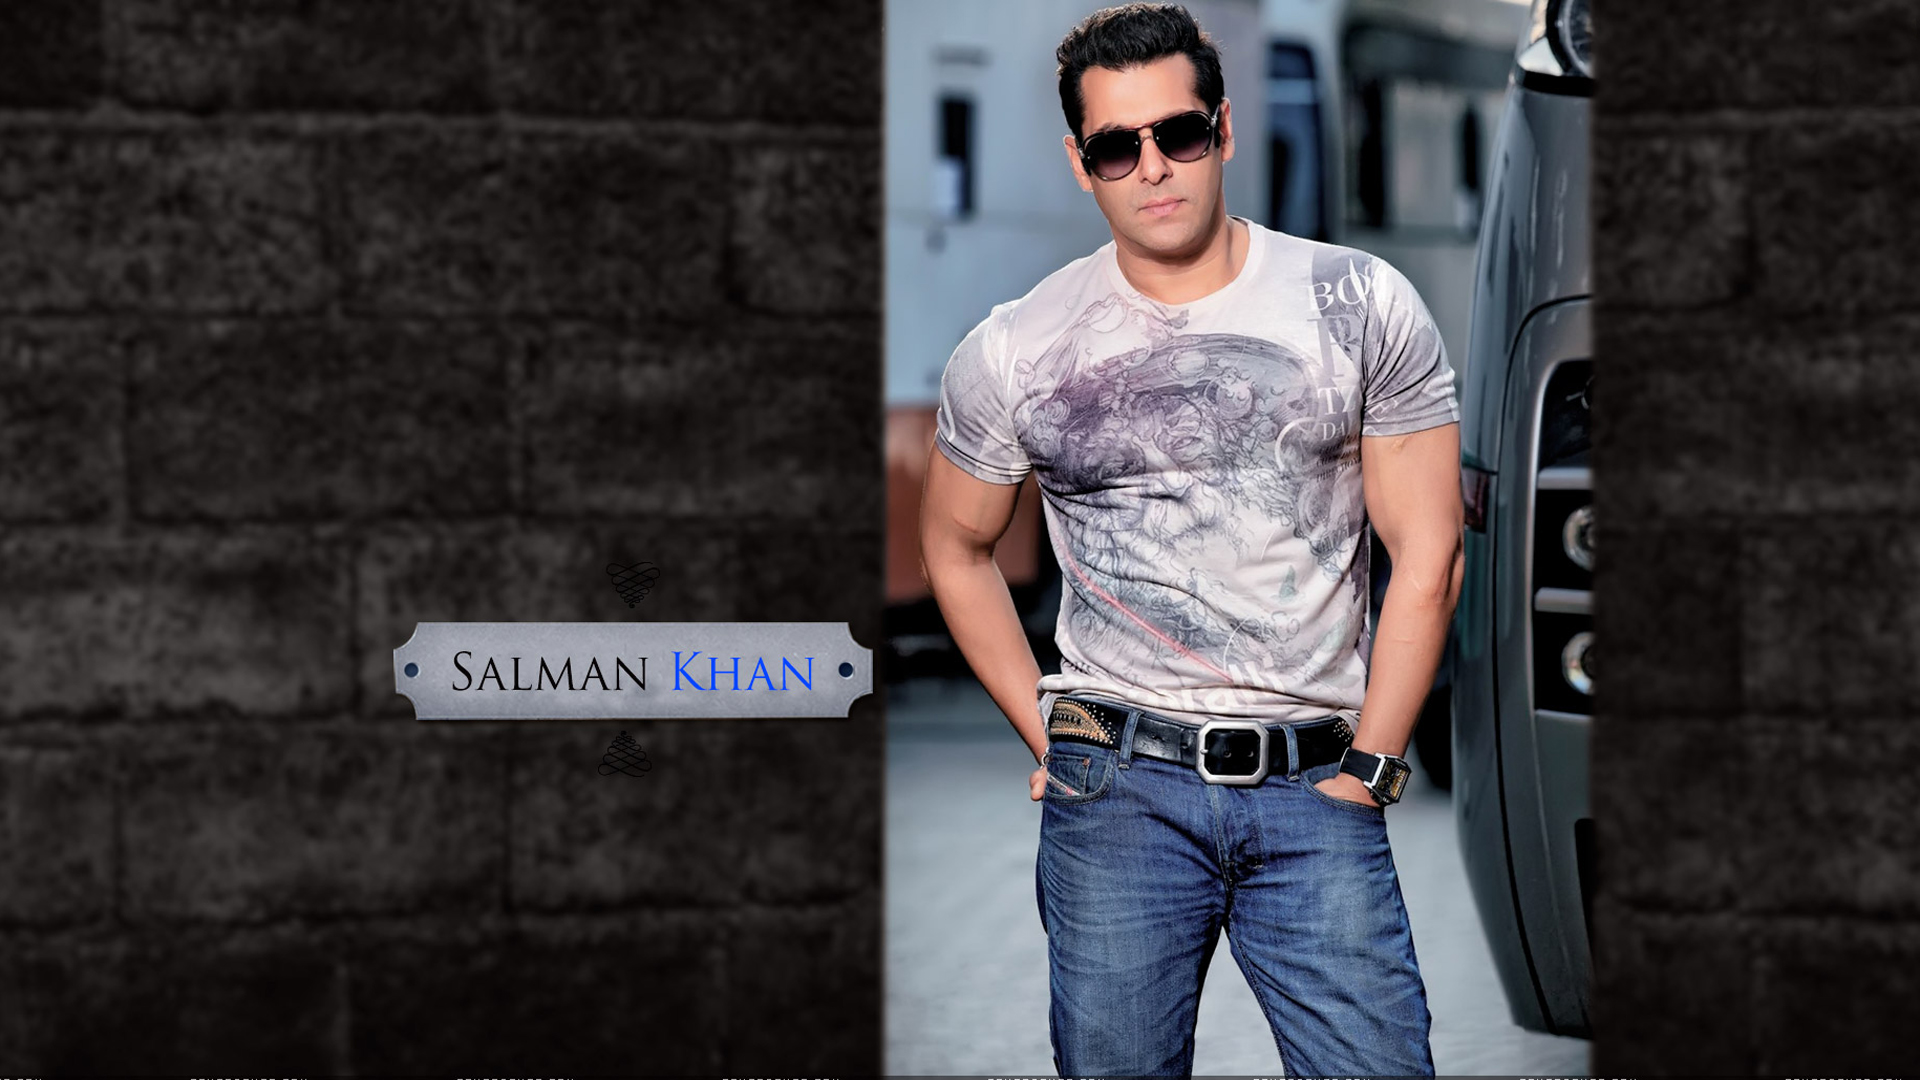 Download Salman khan hd wallpaper